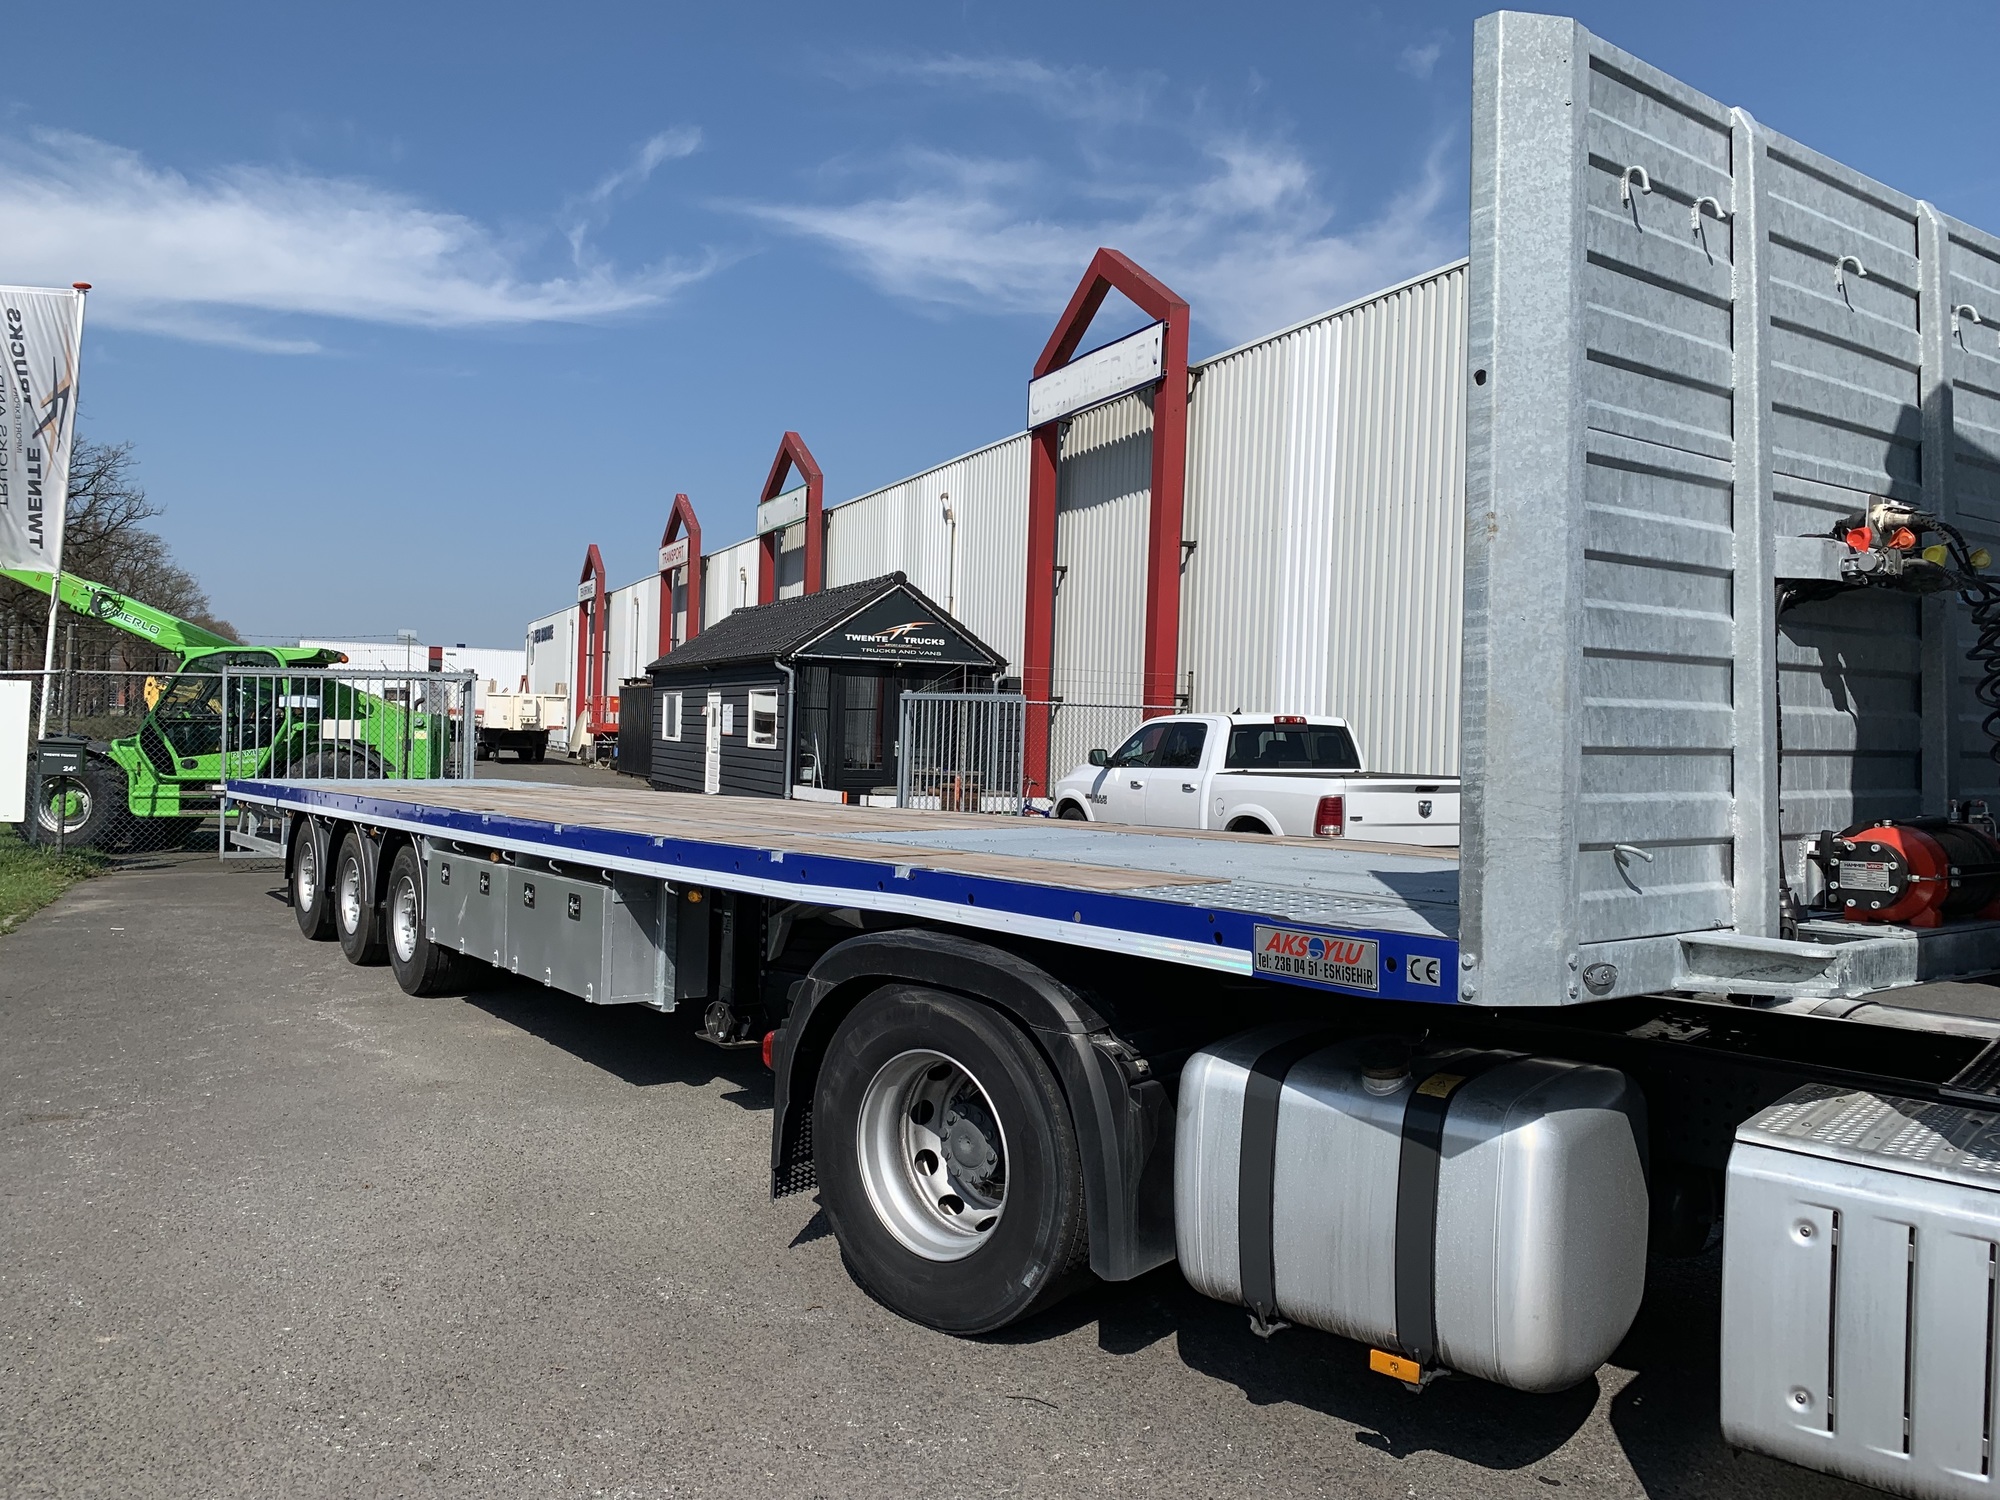 Twente Trucks undefined: photos 2